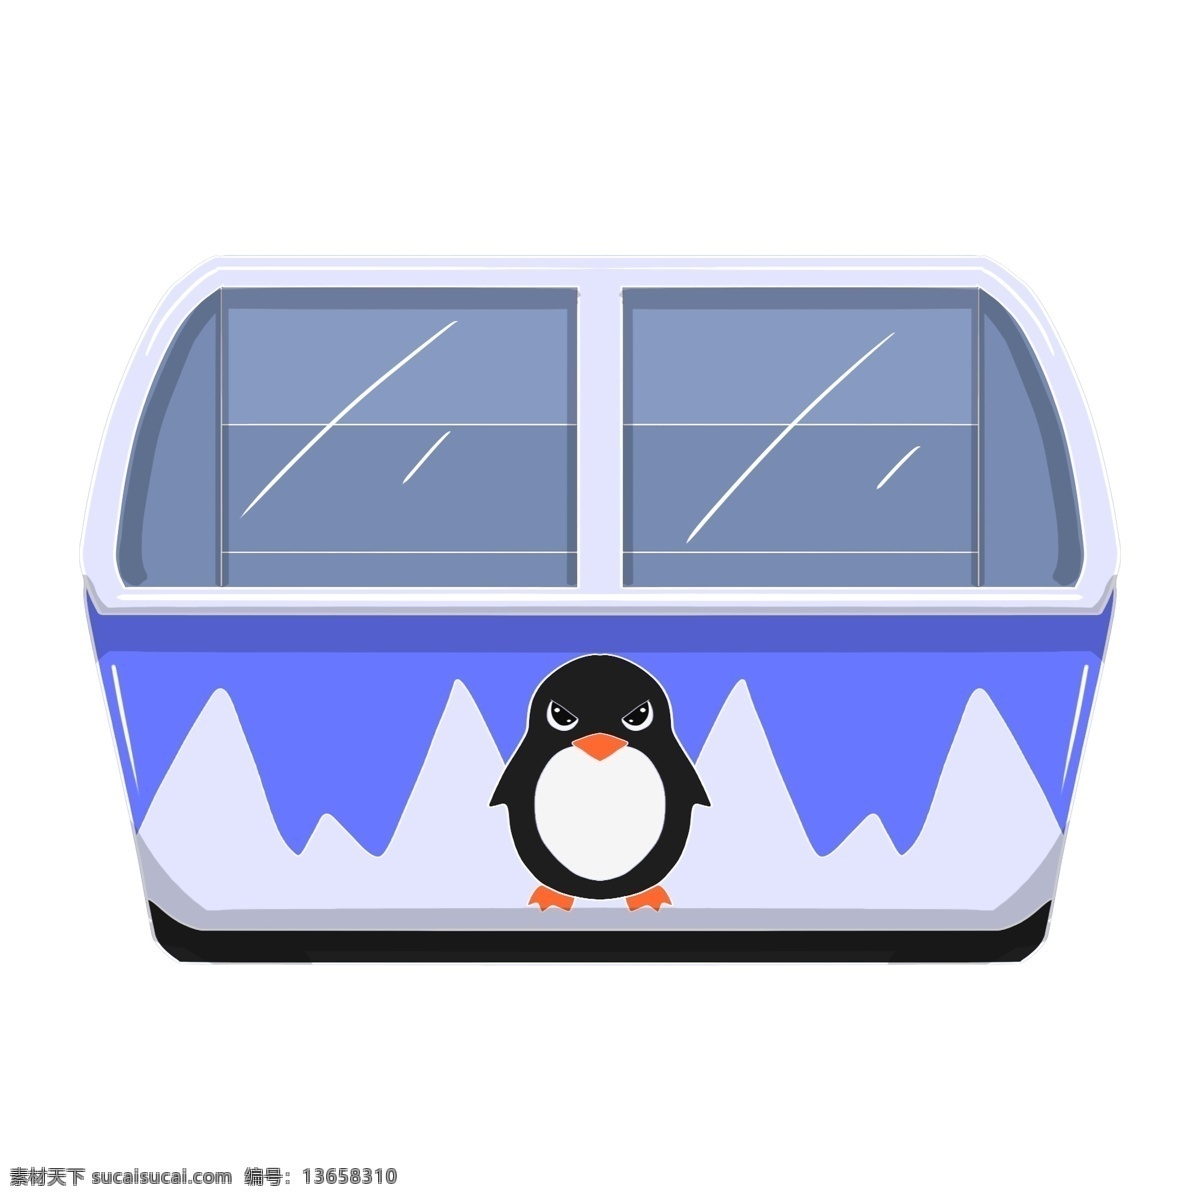 手绘 企鹅 冰柜 插画 家电 冰柜插画 插图 手绘企鹅冰柜 手绘冰柜插画 蓝色冰柜插图